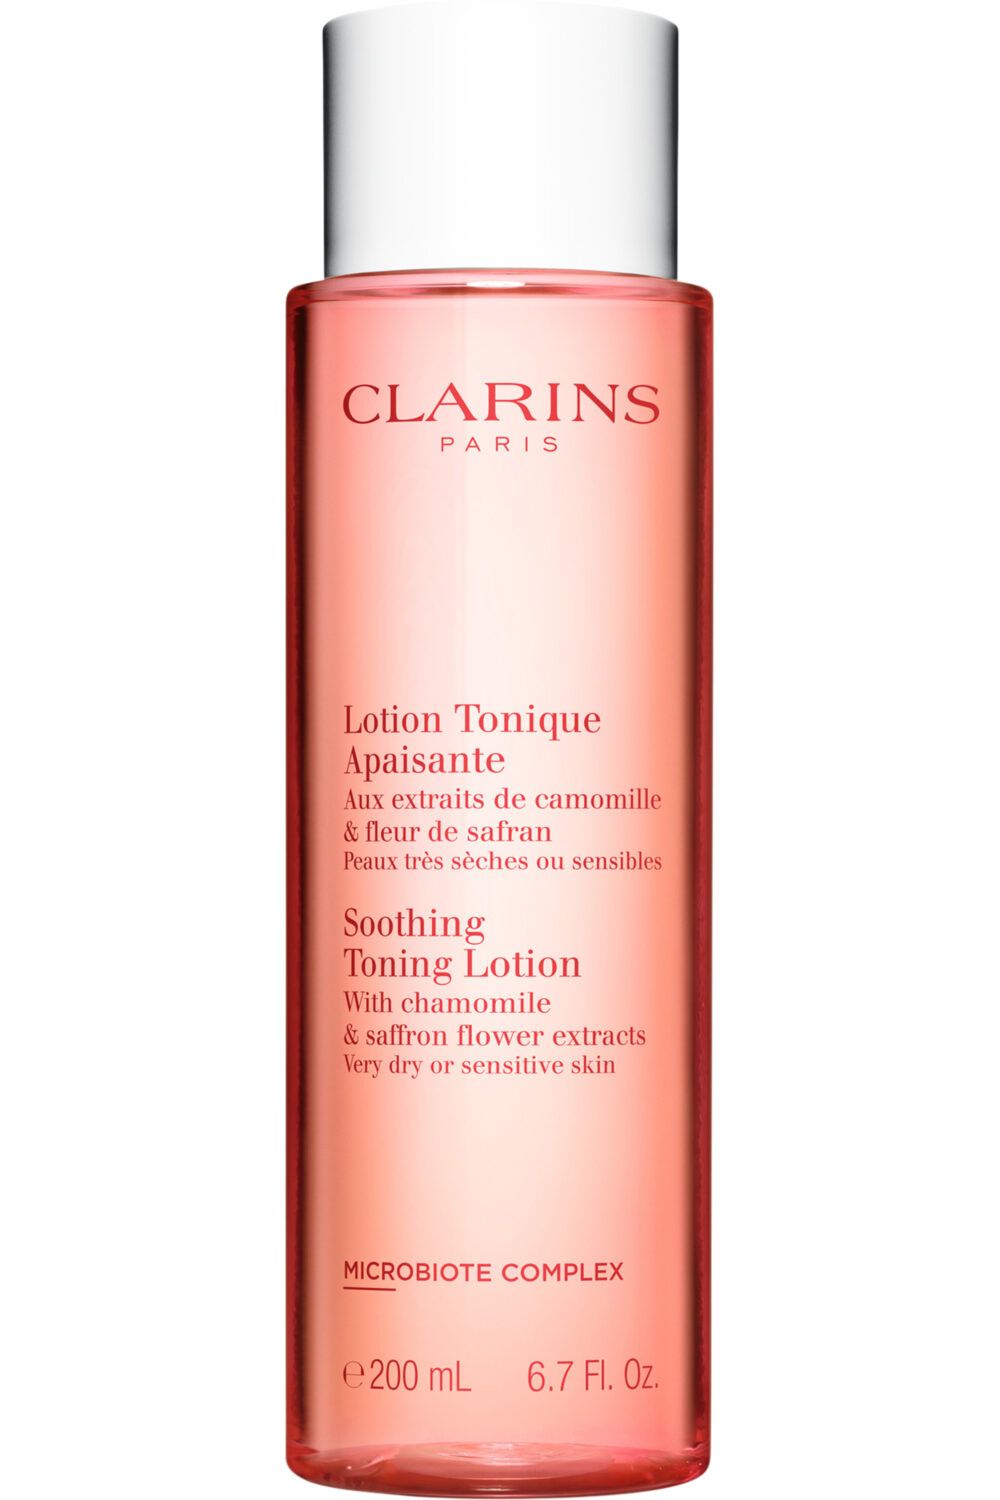 Clarins - Lotion tonique apaisante peaux très sèches ou sensibles 200 mL